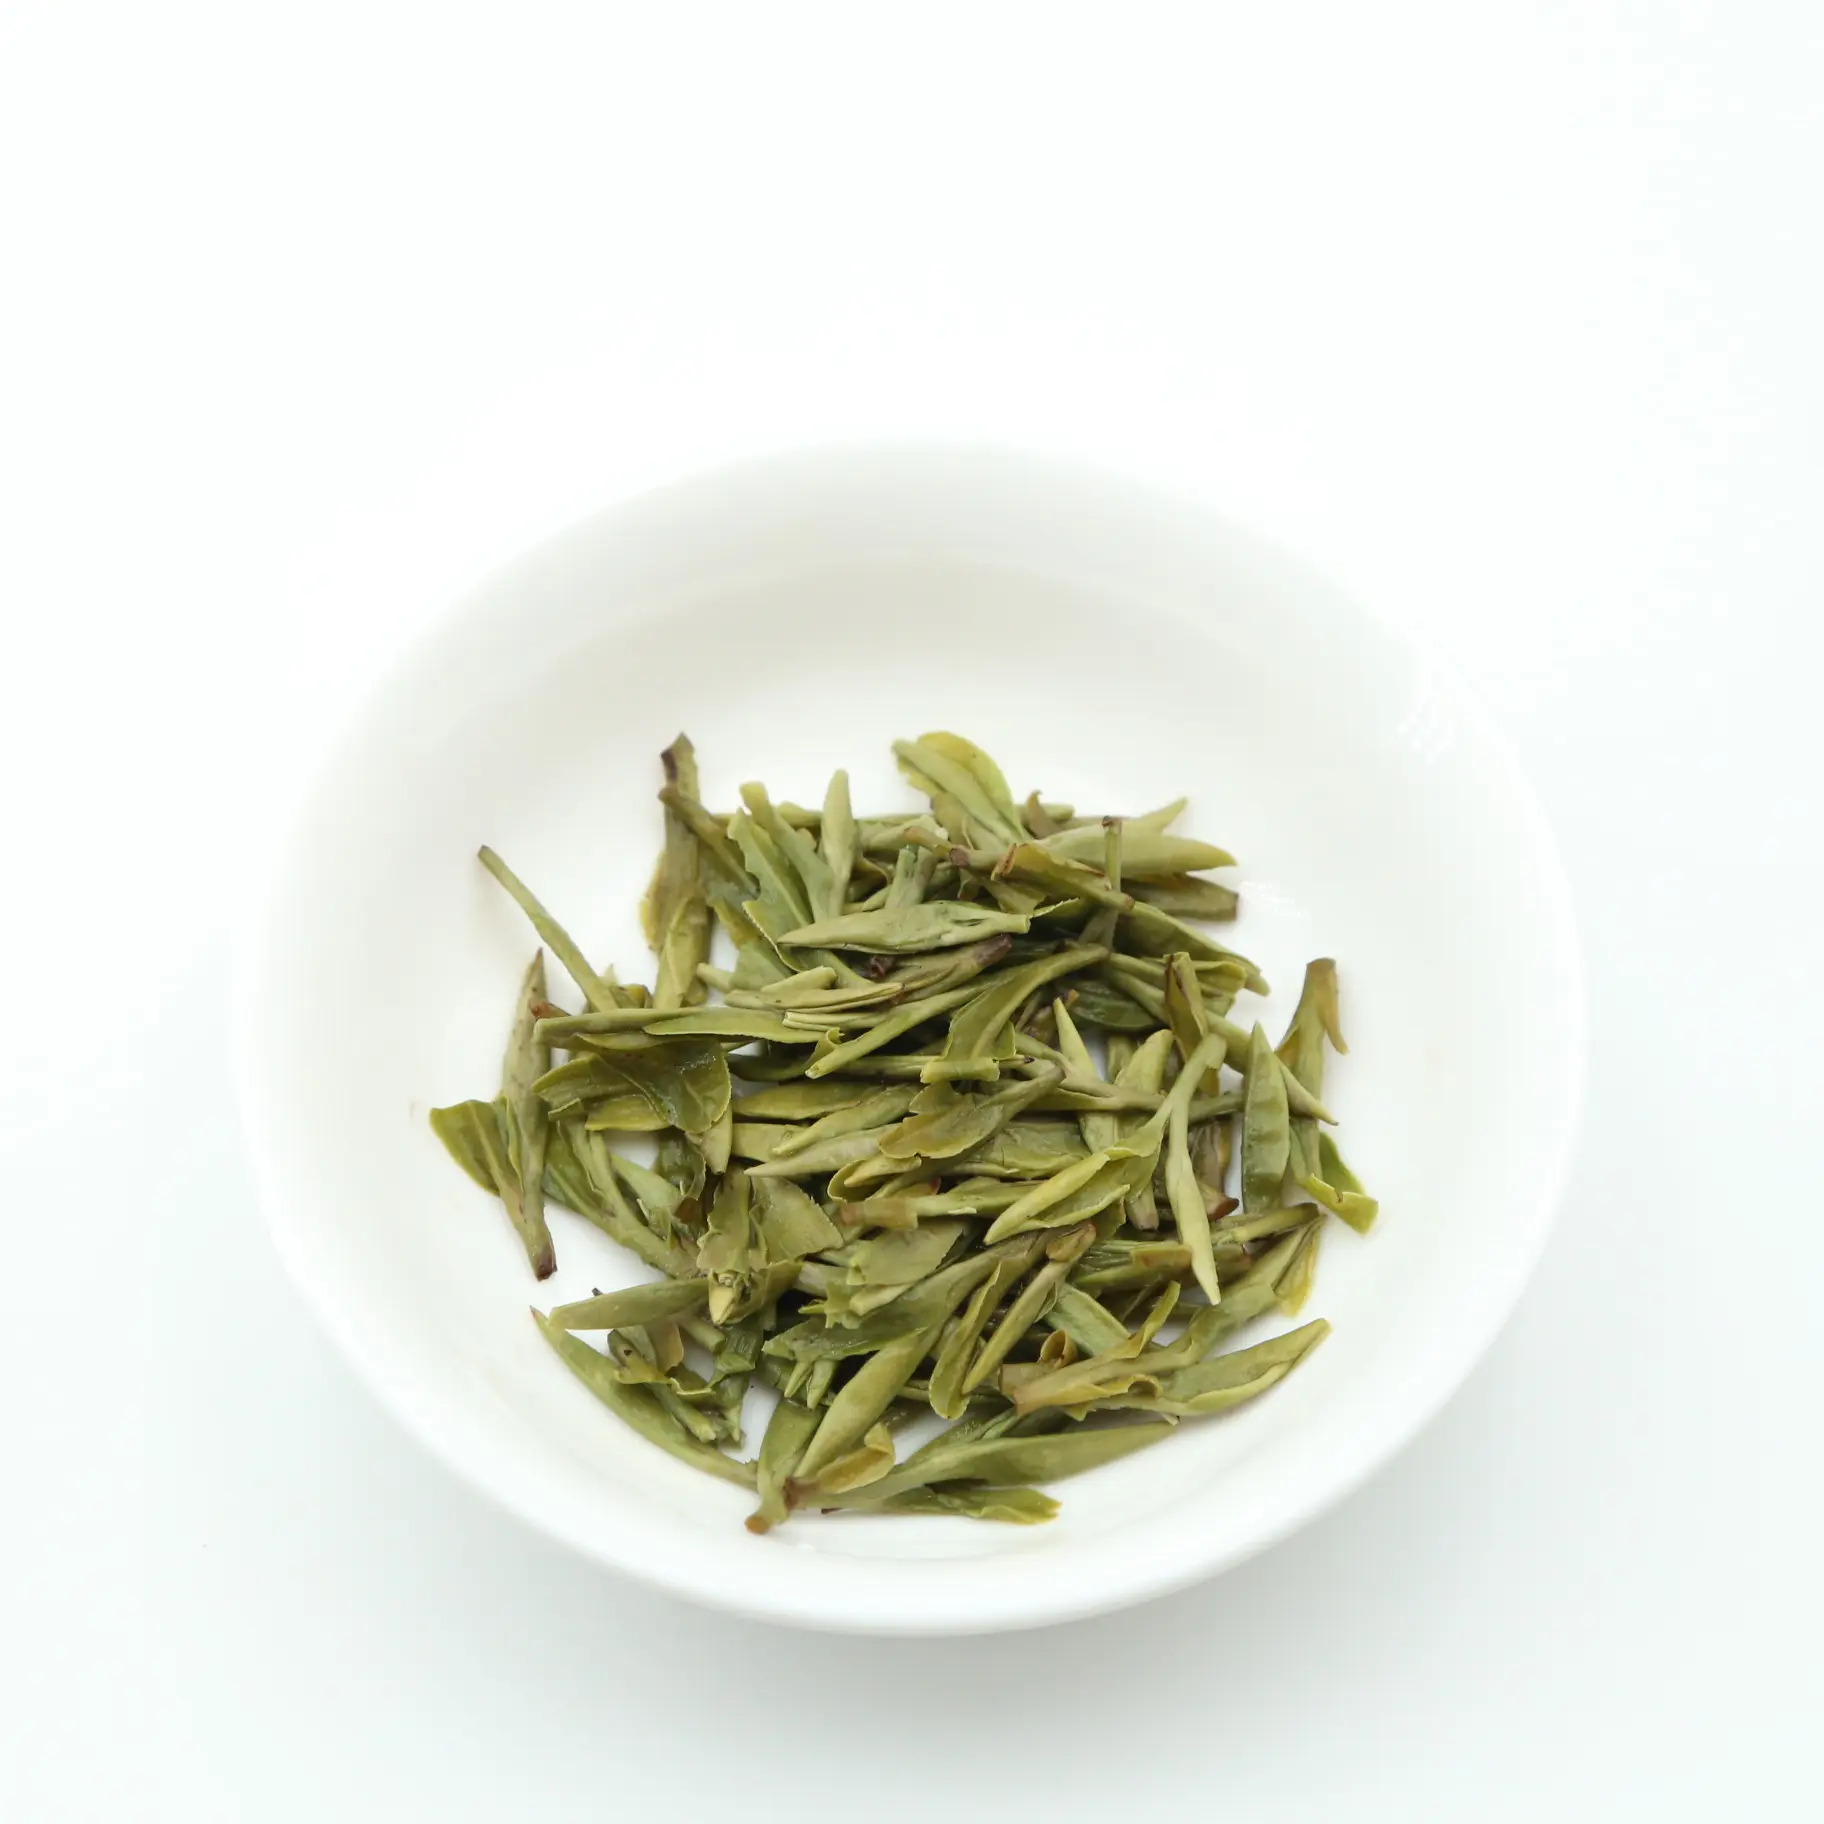 Handmade High quality Hangzhou Longjing / Long Jing Green Tea